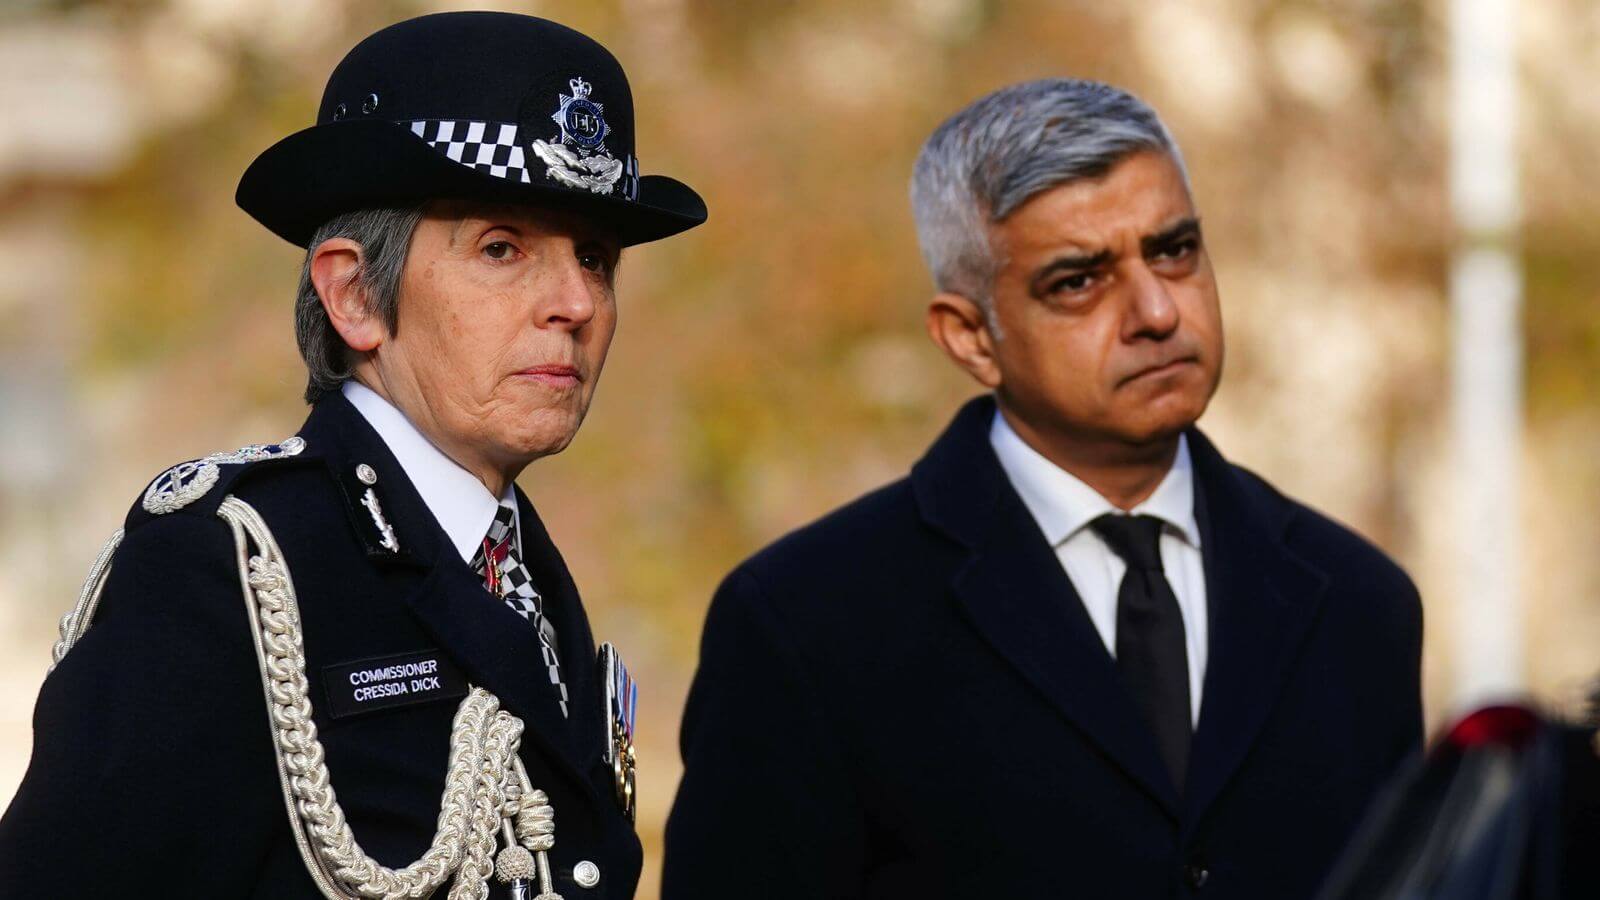 اتحاد الشرطة في بريطانيا يعلن سحب الثقة من عمدة لندن بعد استقالة قائدة الشرطة